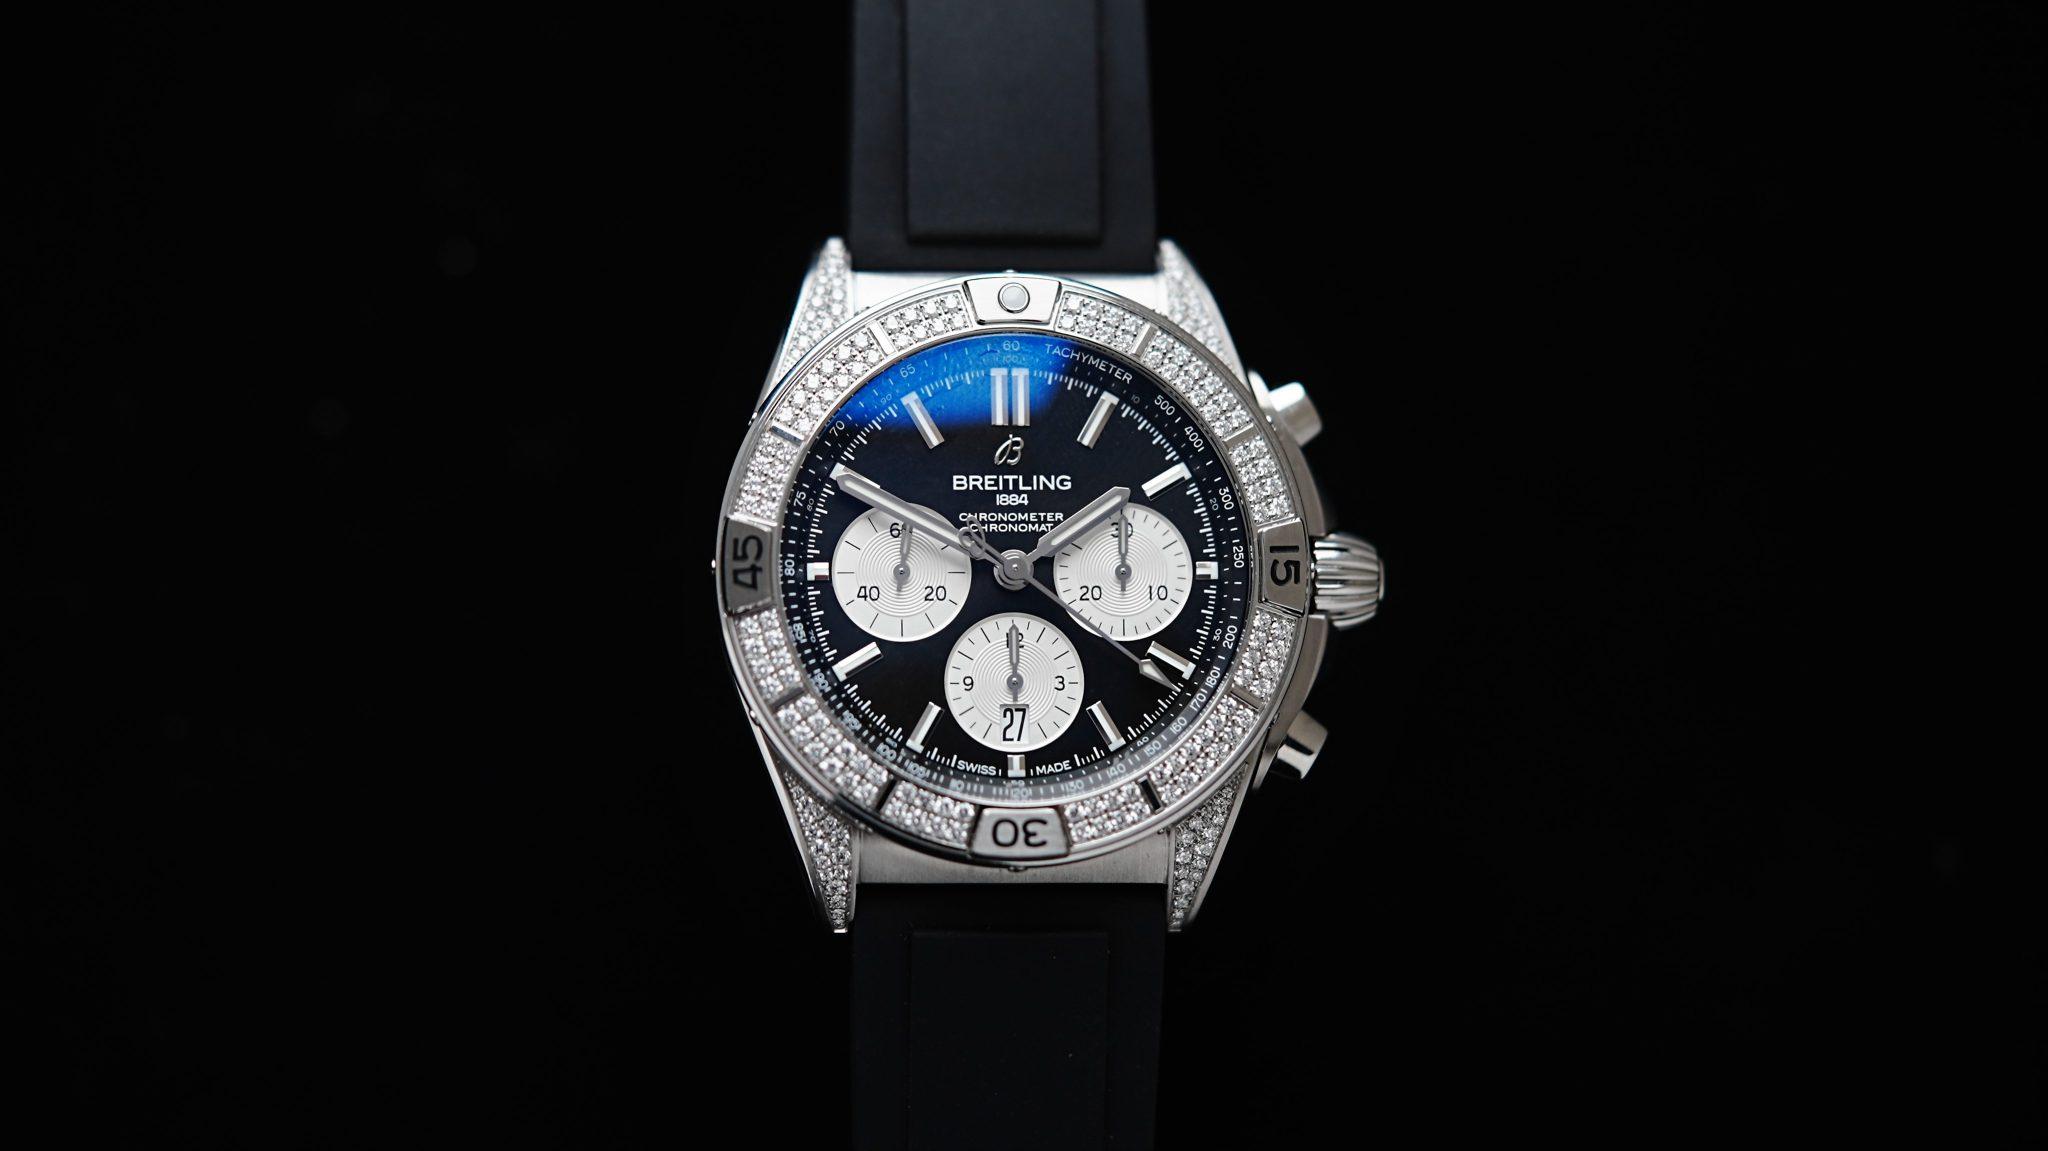 Diamond embezzled Breitling B01 42 Chronomat watch.